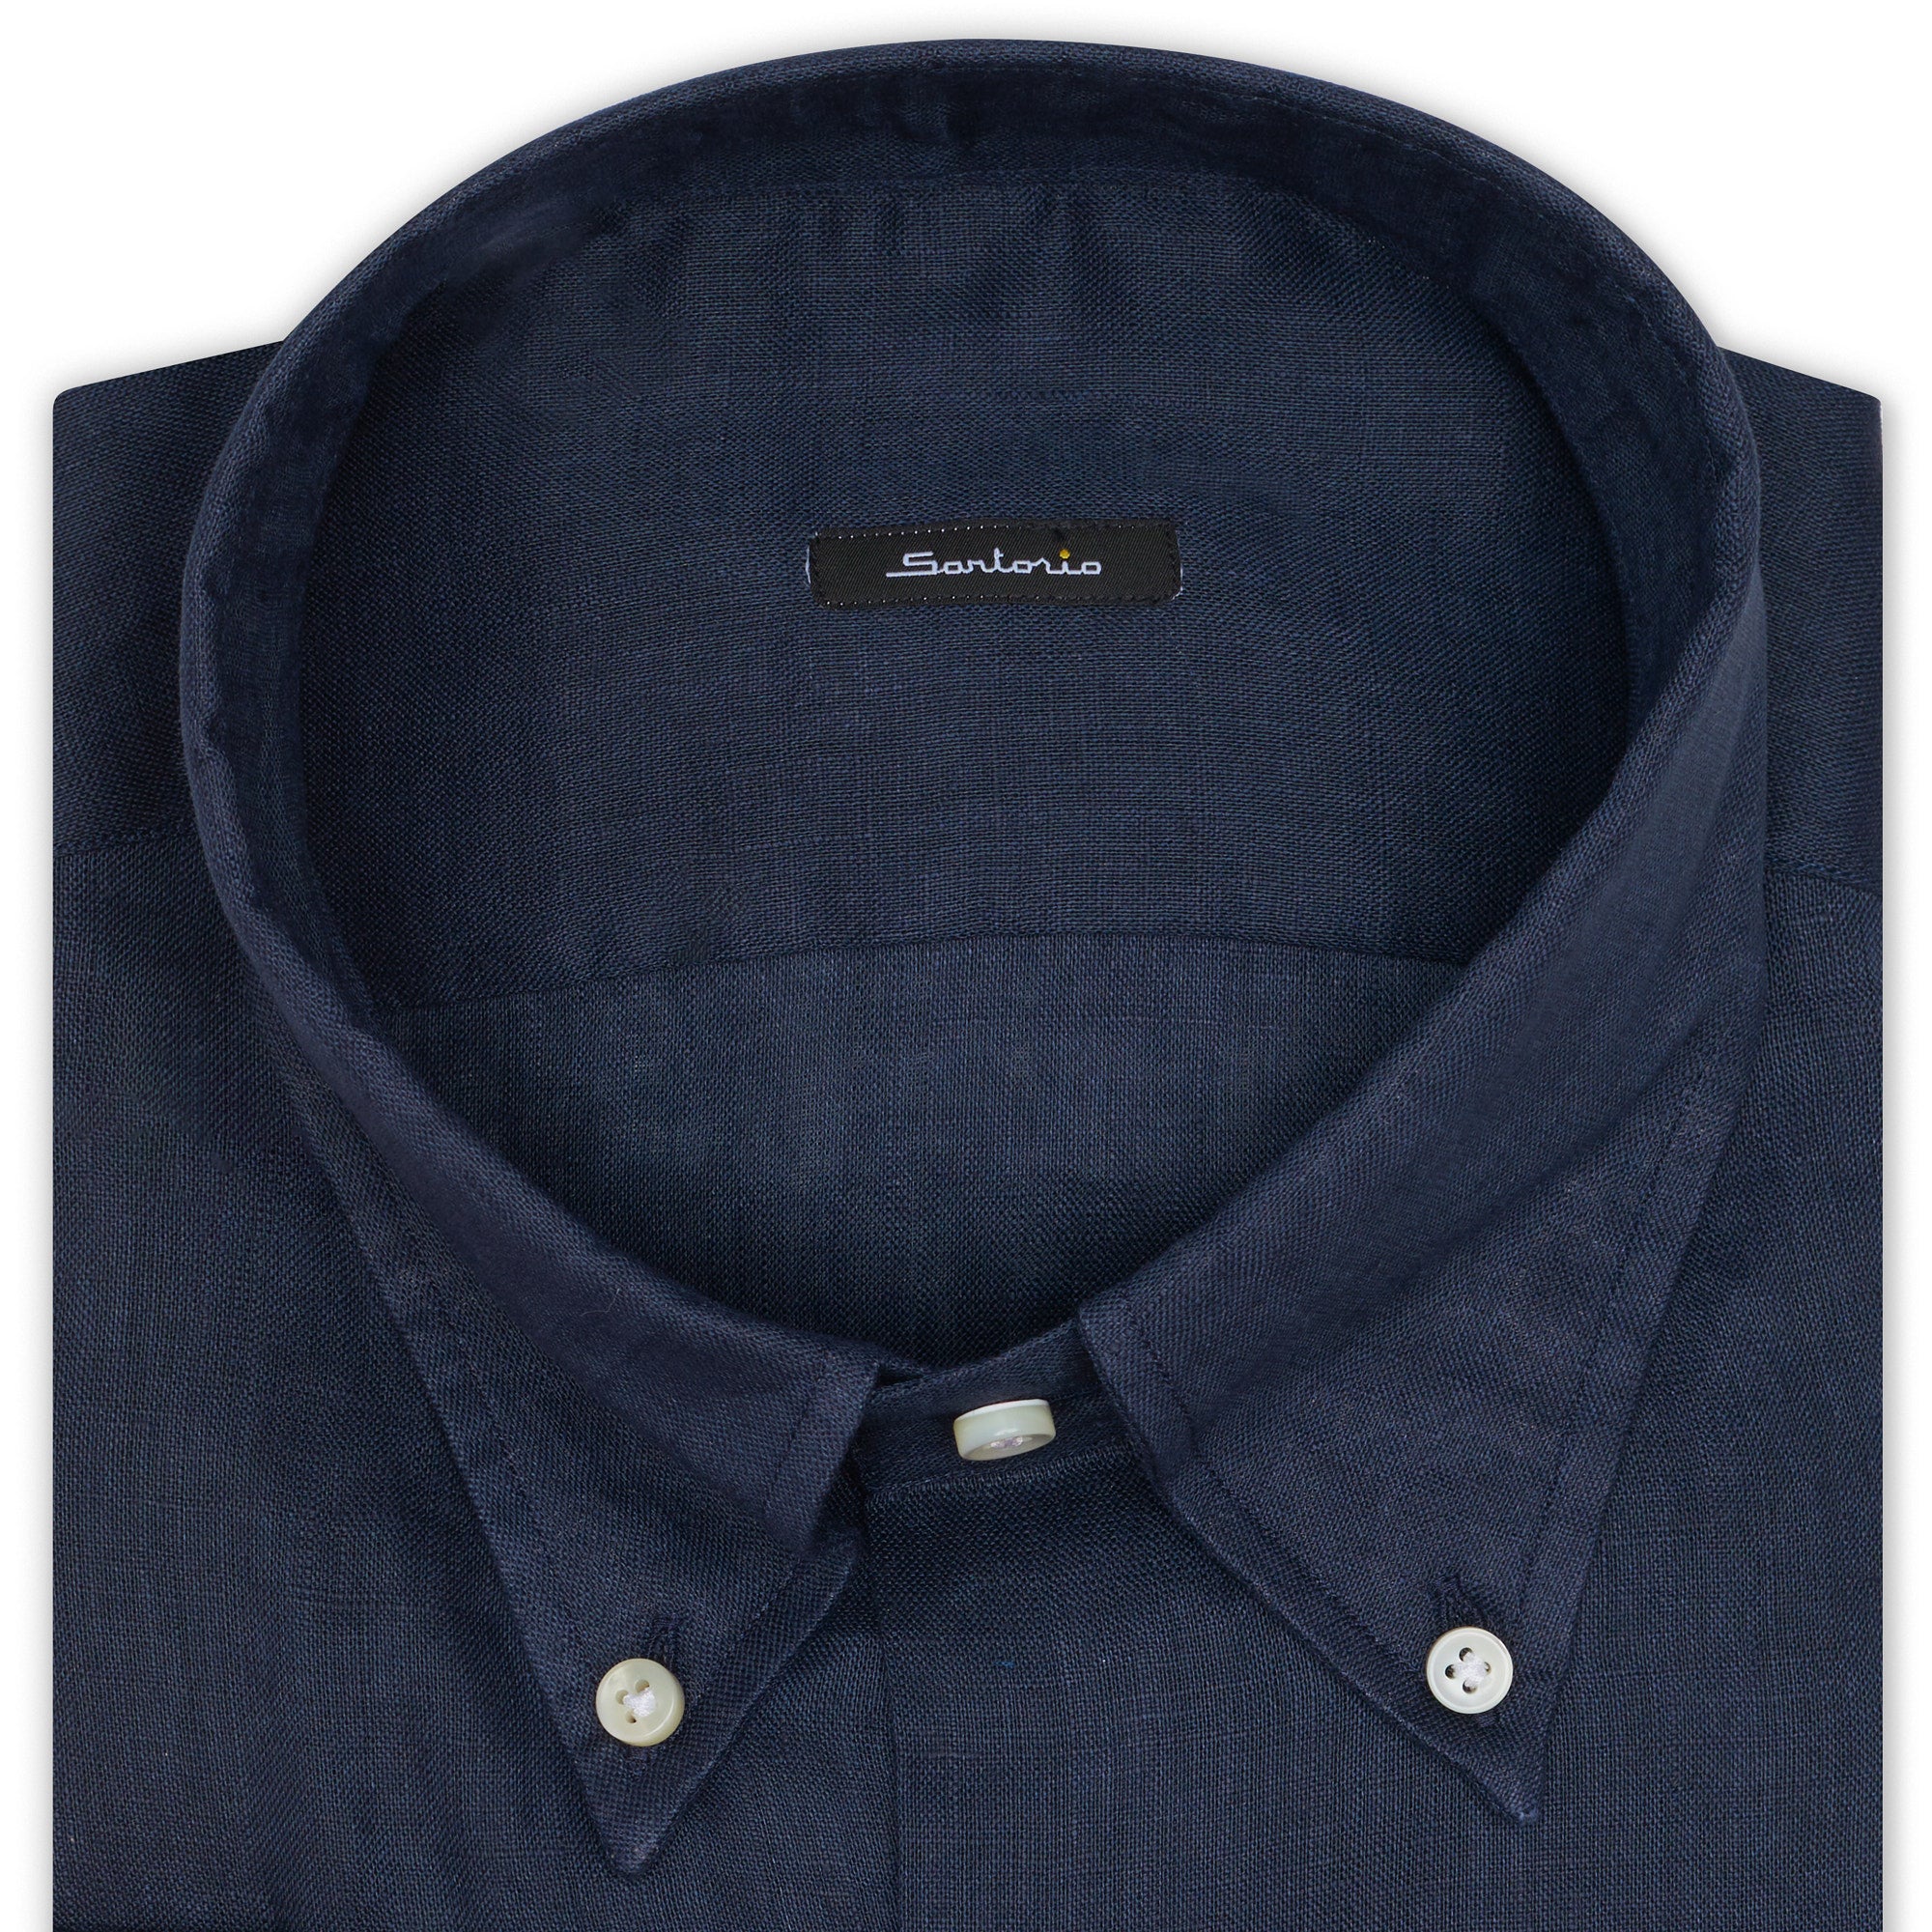 SARTORIO Napoli by KITON Indigo Blue Linen Button-Down Casual Shirt EU 40 NEW US 15.75 SARTORIO